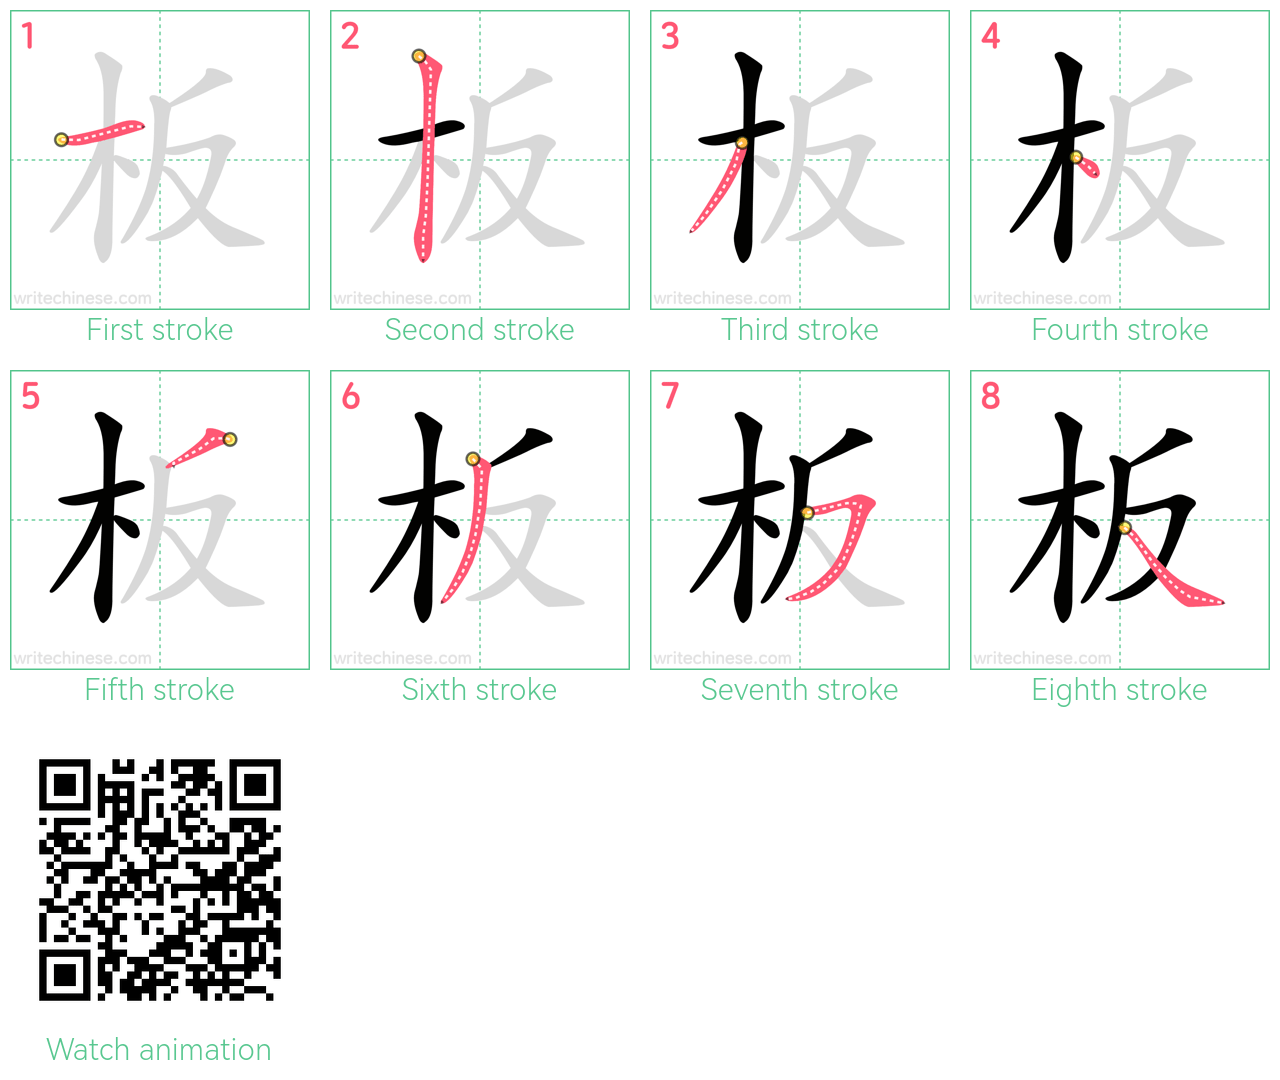 板 step-by-step stroke order diagrams